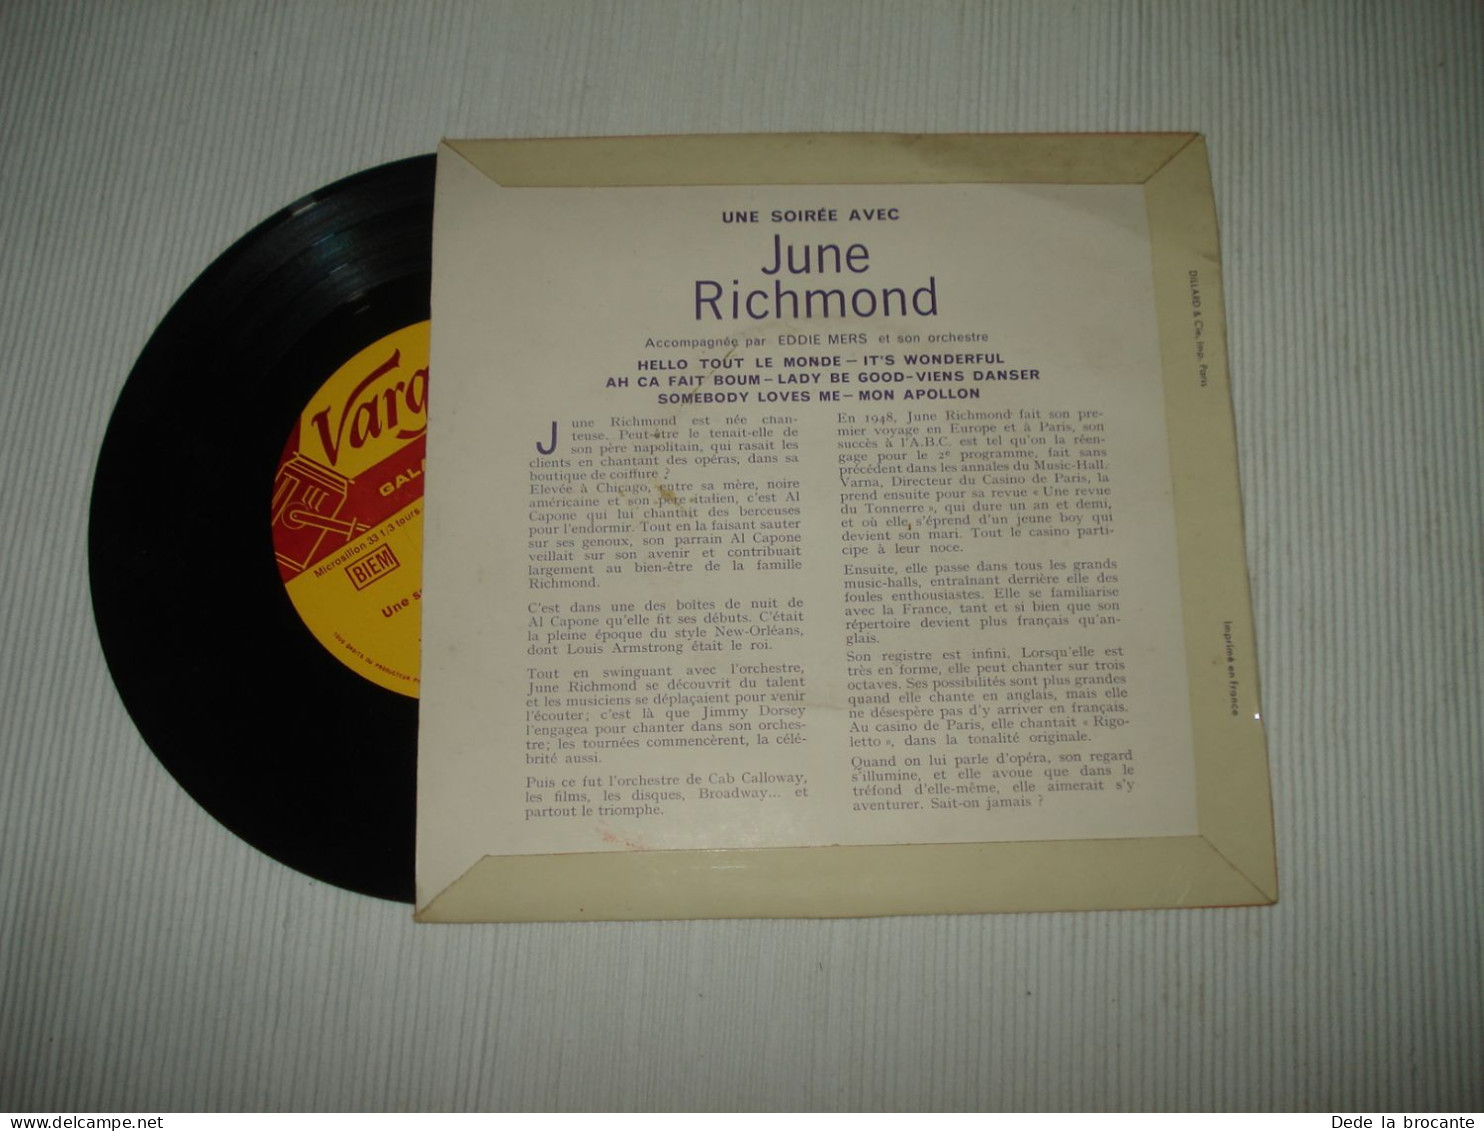 B13 / June Richmond – Une Soirée Avec... - 7"- 33 T - G-305 - FR 1961  EX/EX - Speciale Formaten